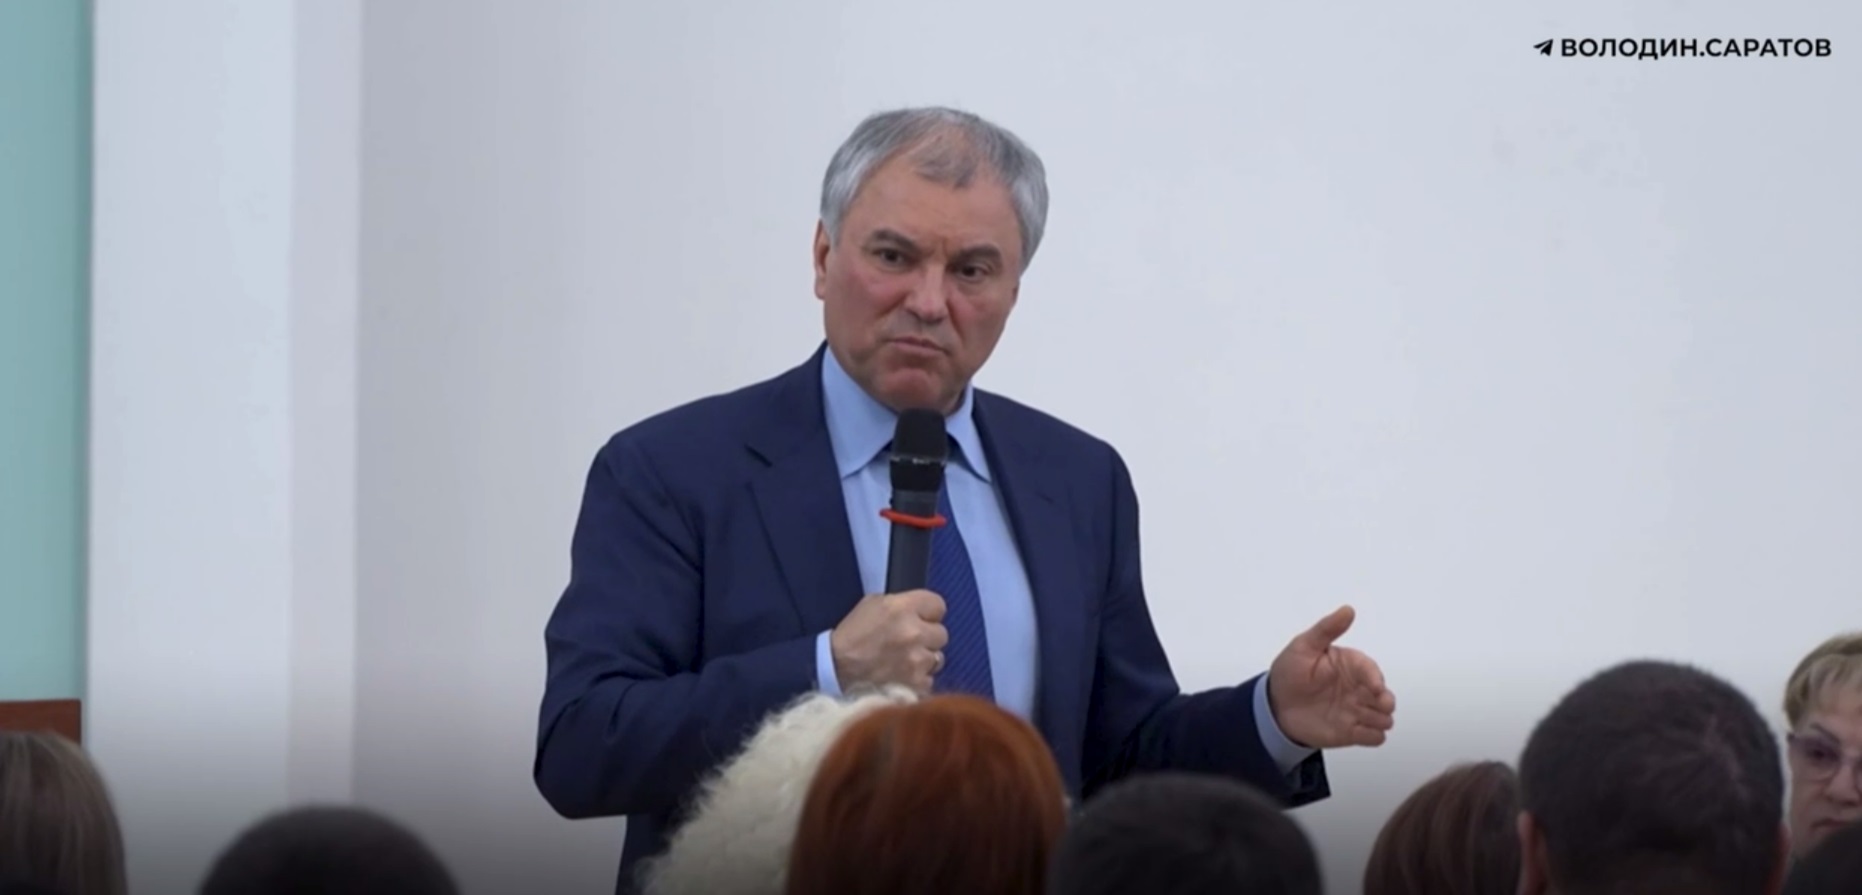 Вячеслав Володин возмутился строительством ФОКа и ледовой арены в Саратовской области